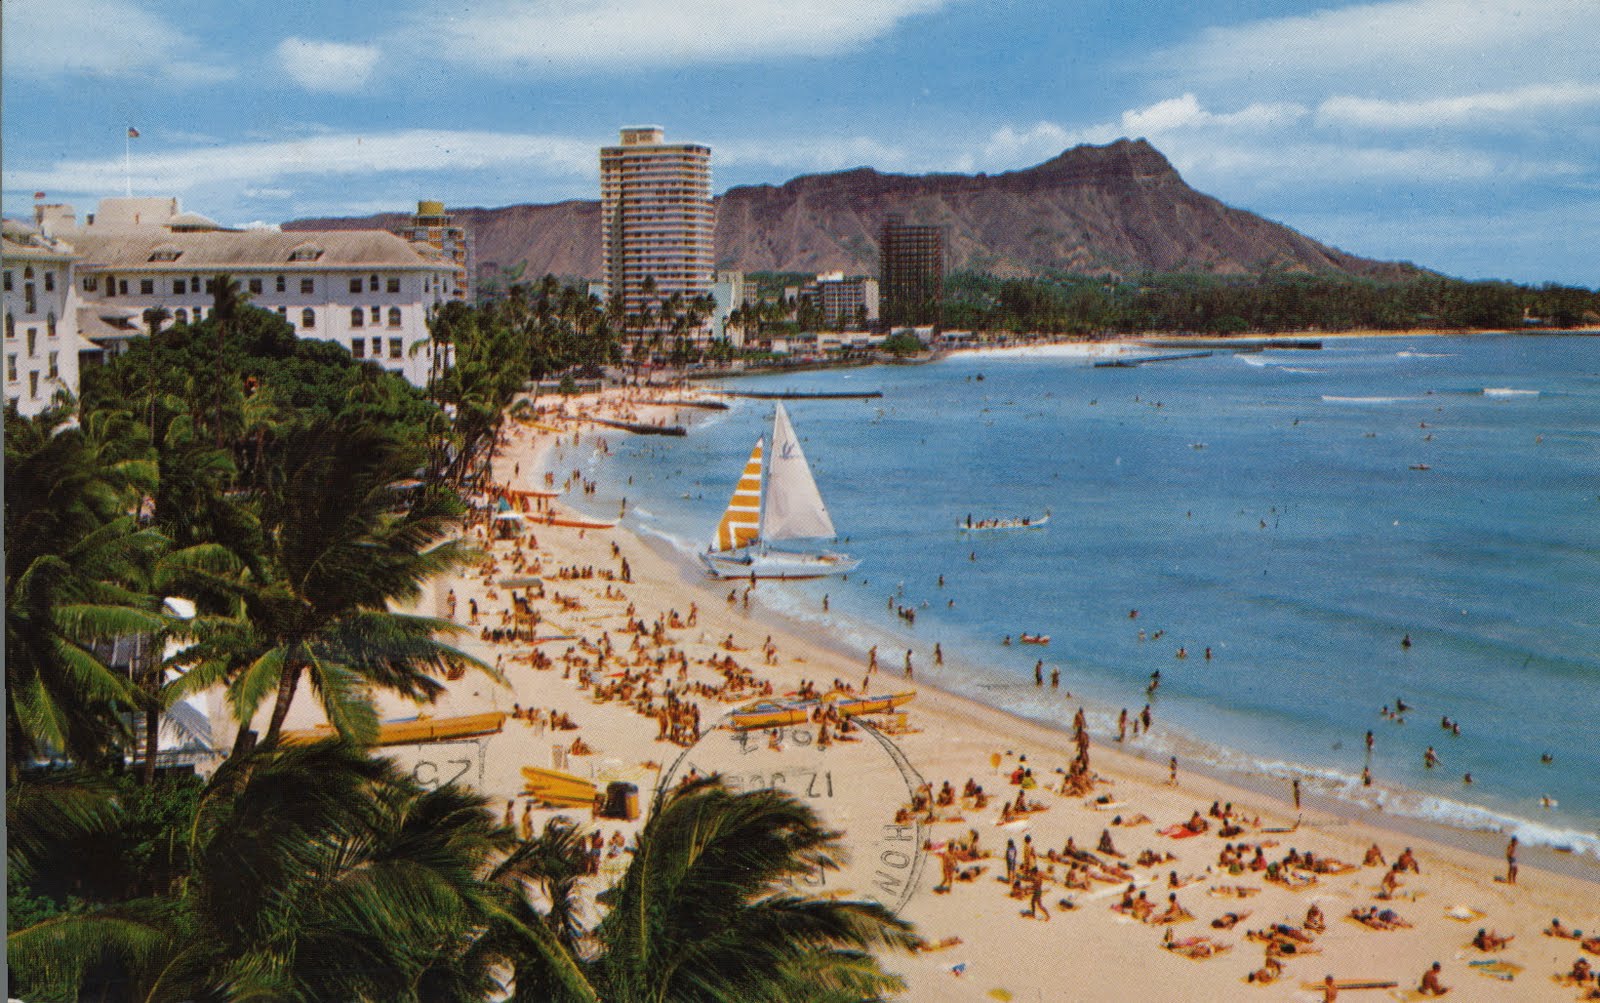 Waikiki Beach Honolulu Hawaii High Resolution Widescreen - Waikiki Beach In 1960 - HD Wallpaper 